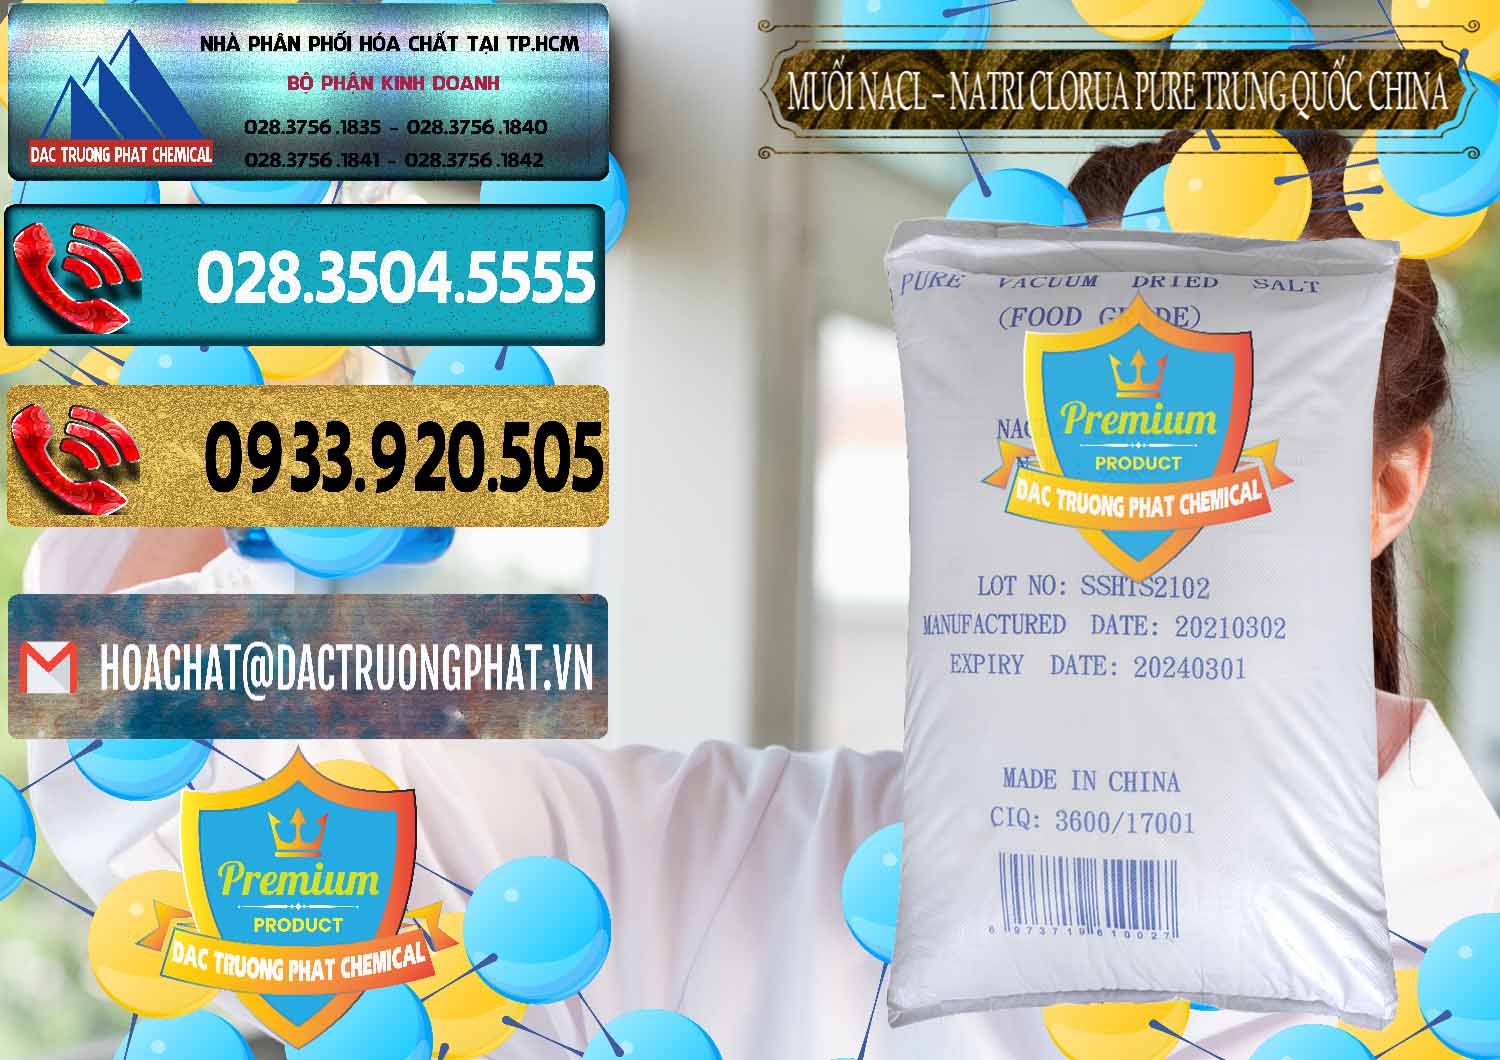 Cty chuyên kinh doanh & bán Muối NaCL – Sodium Chloride Pure Trung Quốc China - 0230 - Nơi cung ứng _ phân phối hóa chất tại TP.HCM - hoachatdetnhuom.com